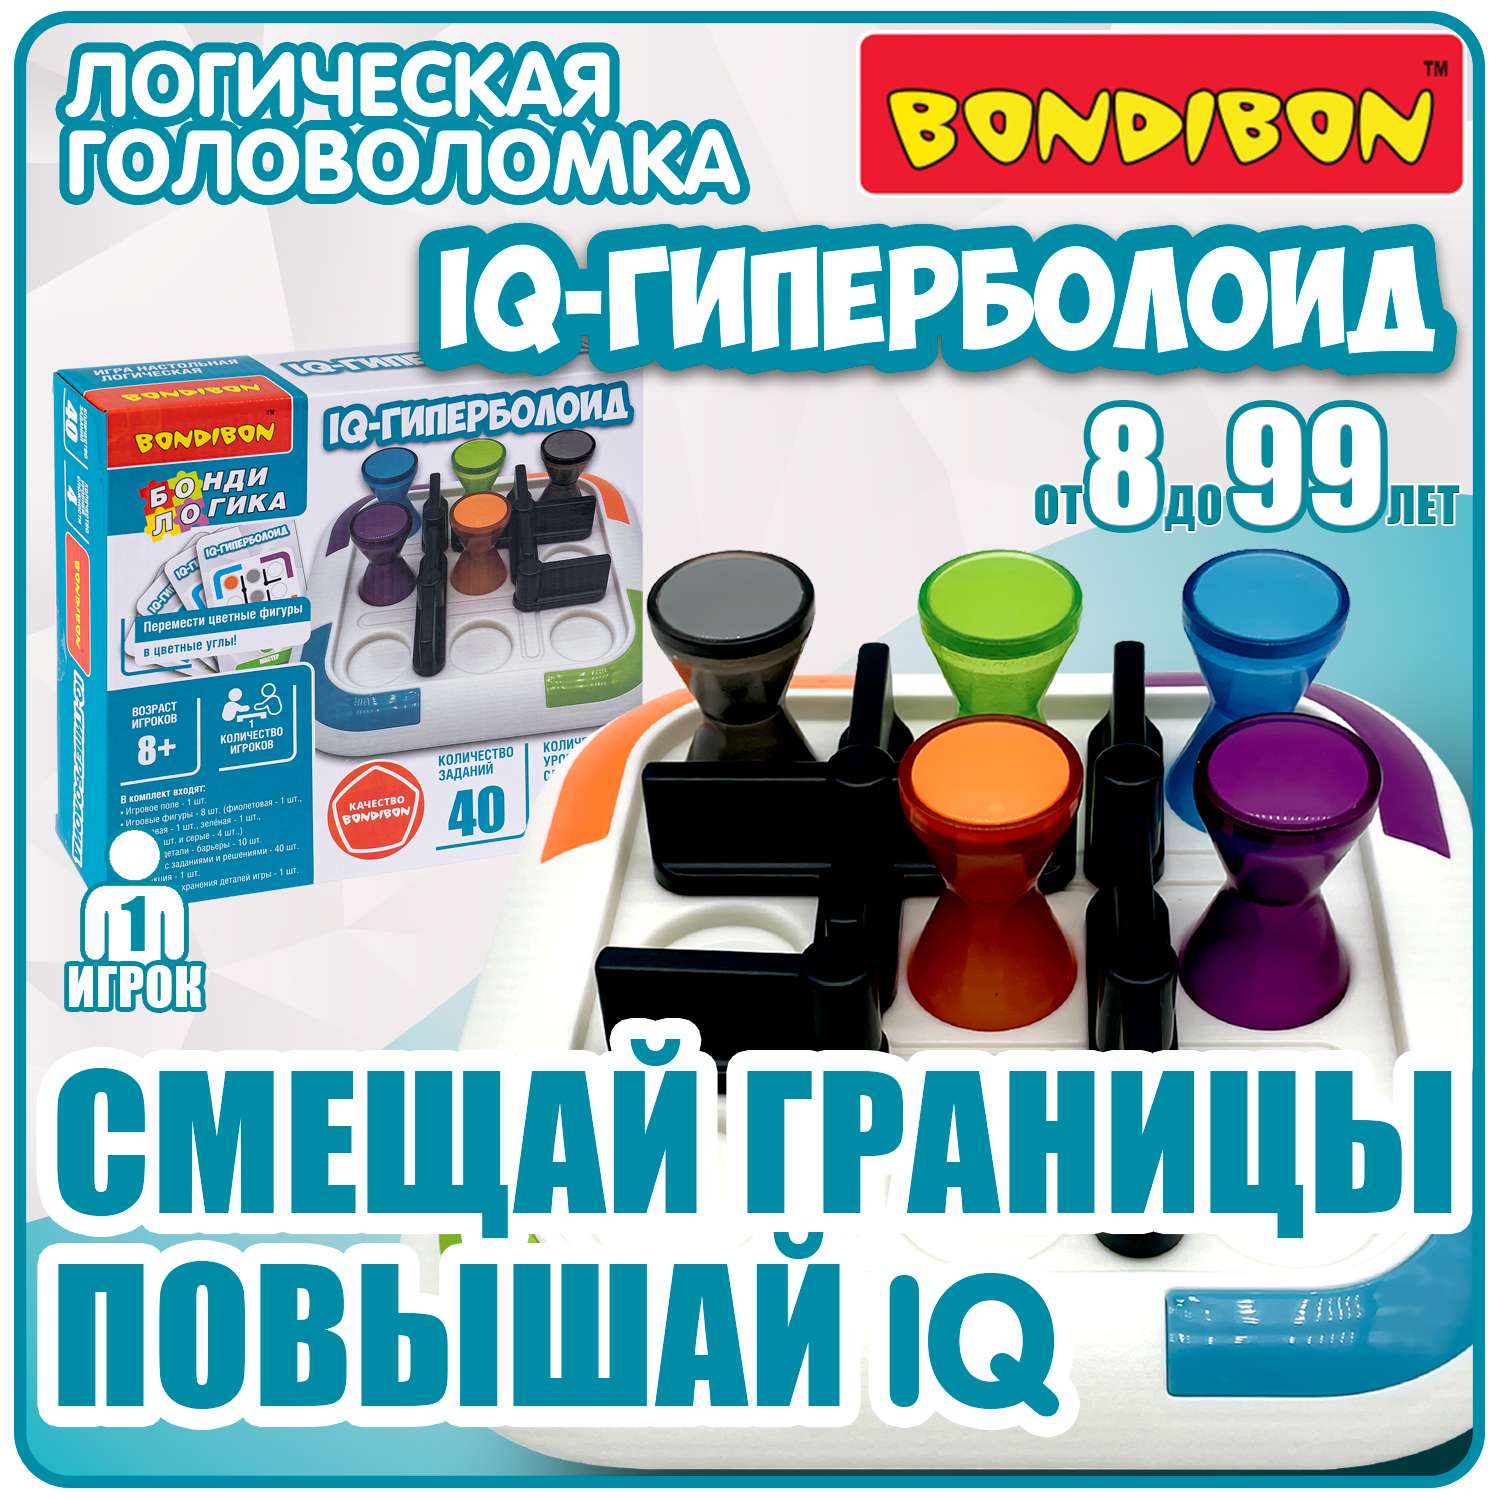 Настольная логическая игра BONDIBON головоломка IQ-Гиперболоид серия Бондилогика - фото 1